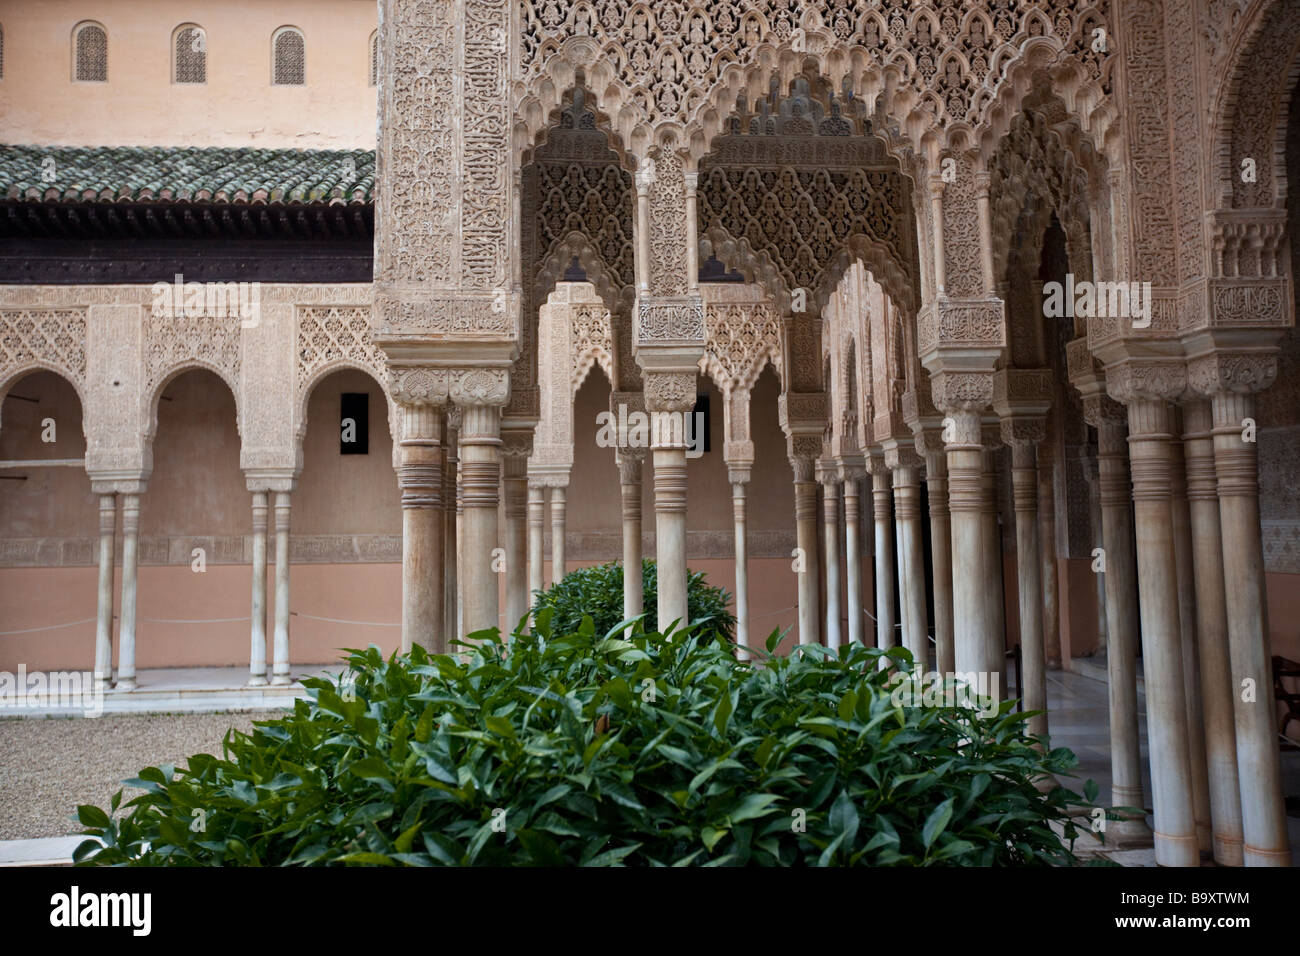 Patio de los Leones dans le Palais de l'Alhambra à Grenade Espagne Banque D'Images